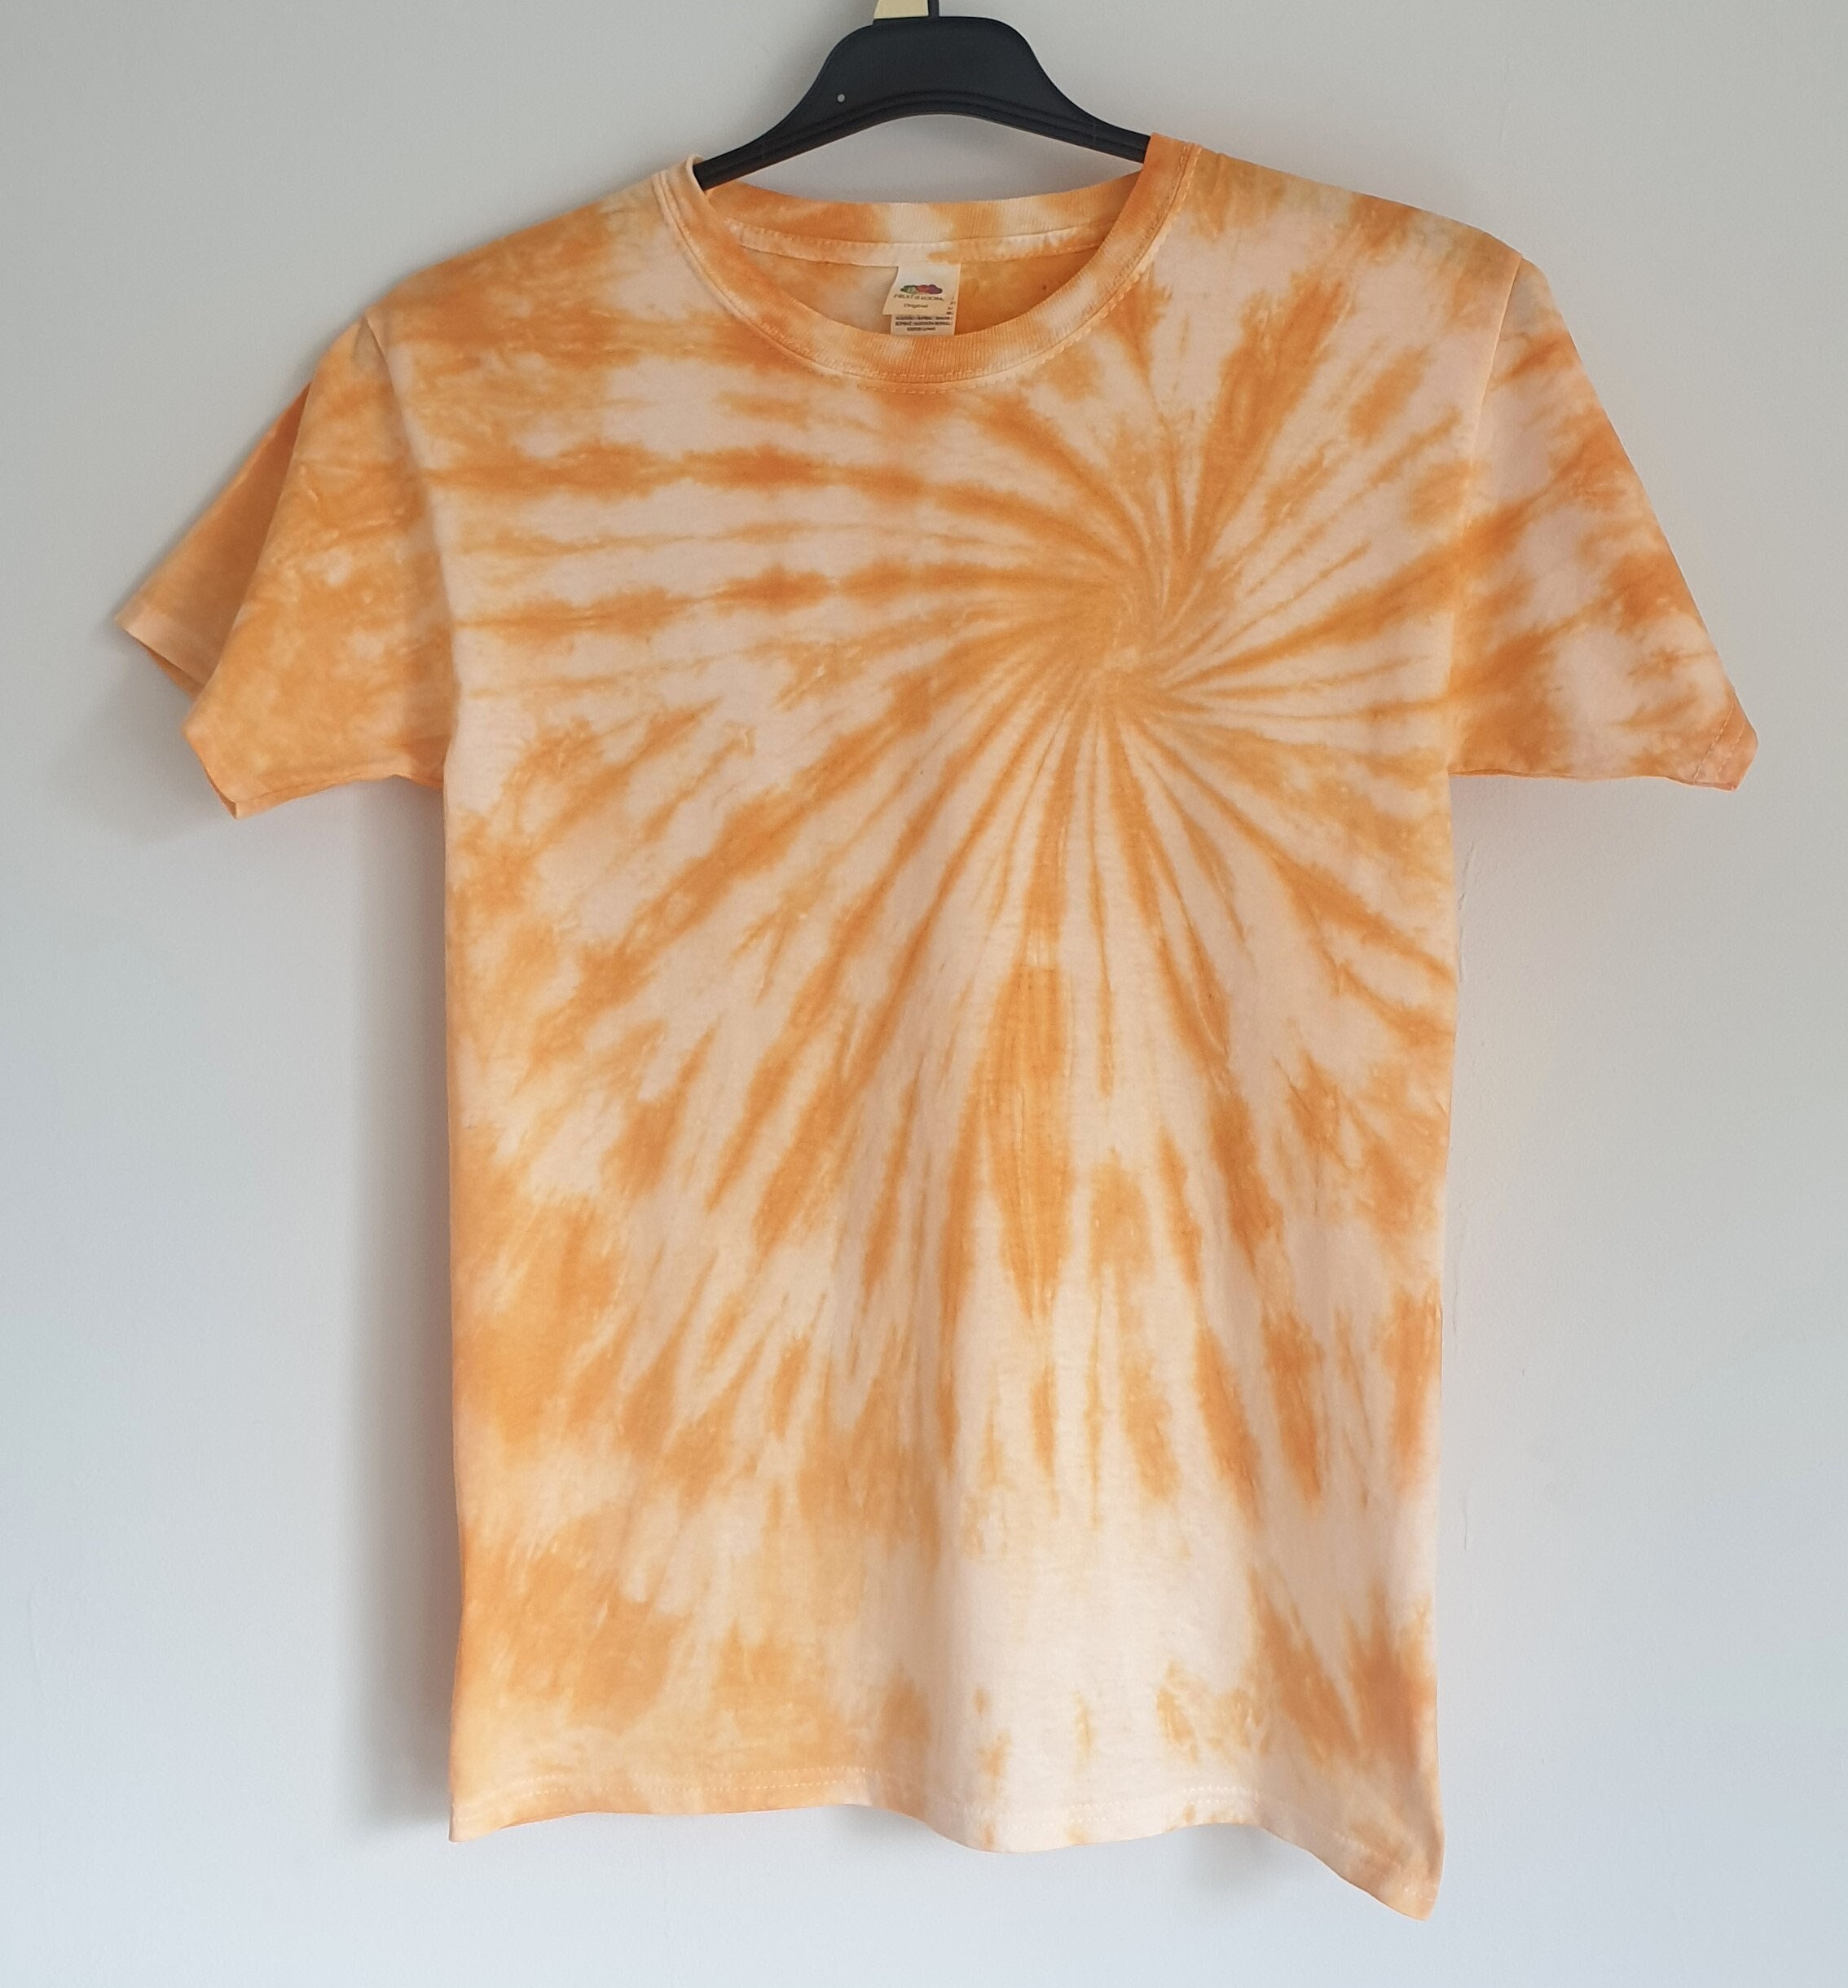 Light Orange Swirl Tie Dye T-shirt Available in Short Sleeved